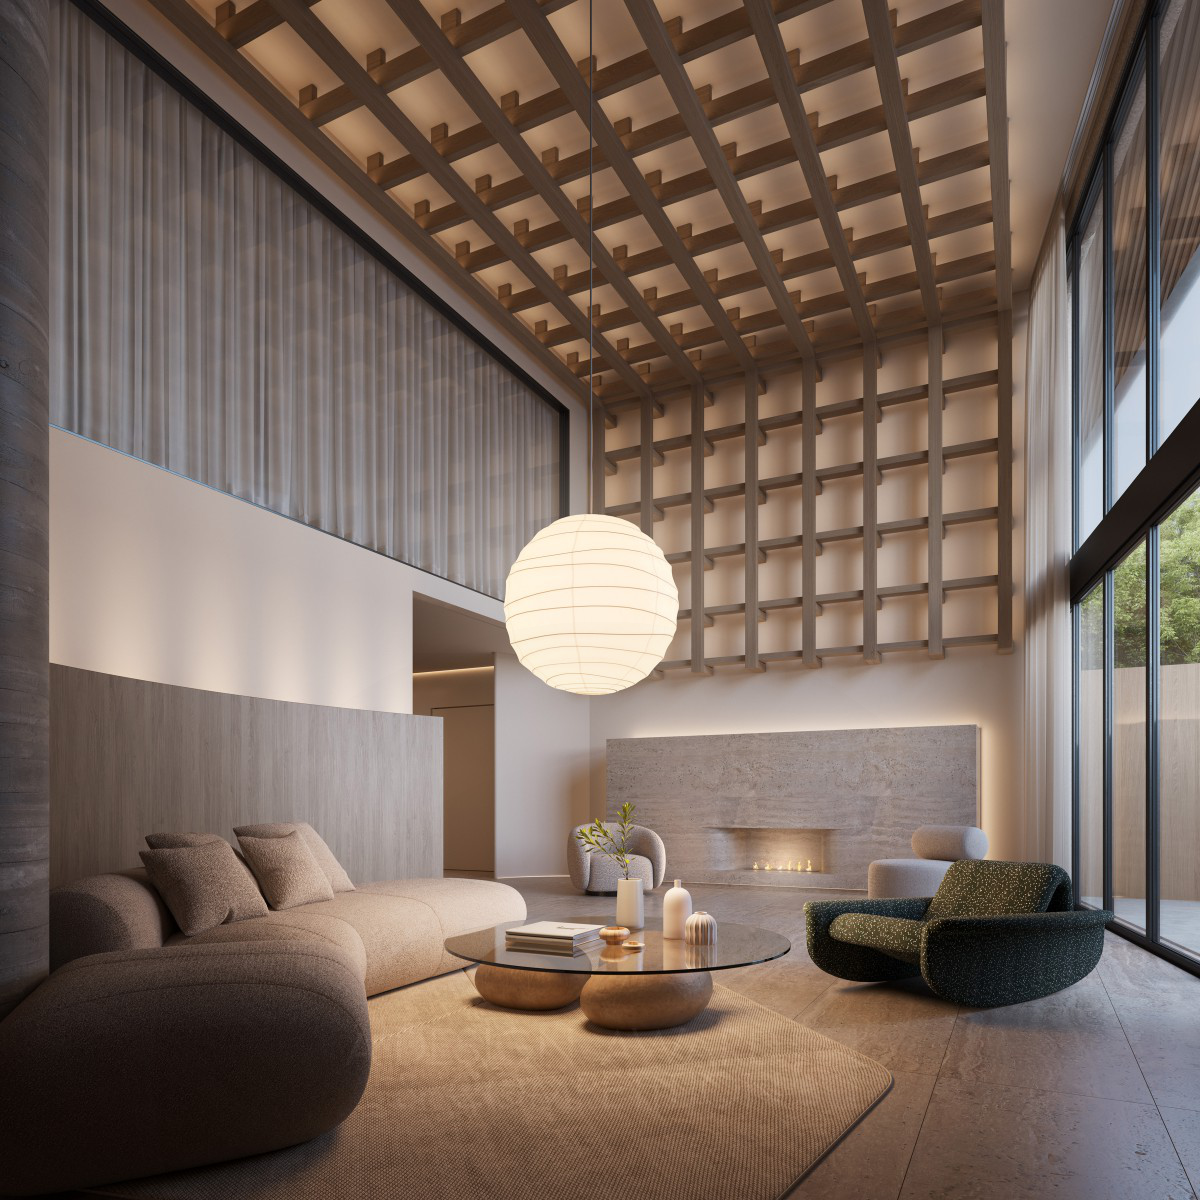 Giuliano Marchiorato wins Silver at the prestigious A' Interior Space, Retail and Exhibition Design Award with Zen Building Interior Design Project.